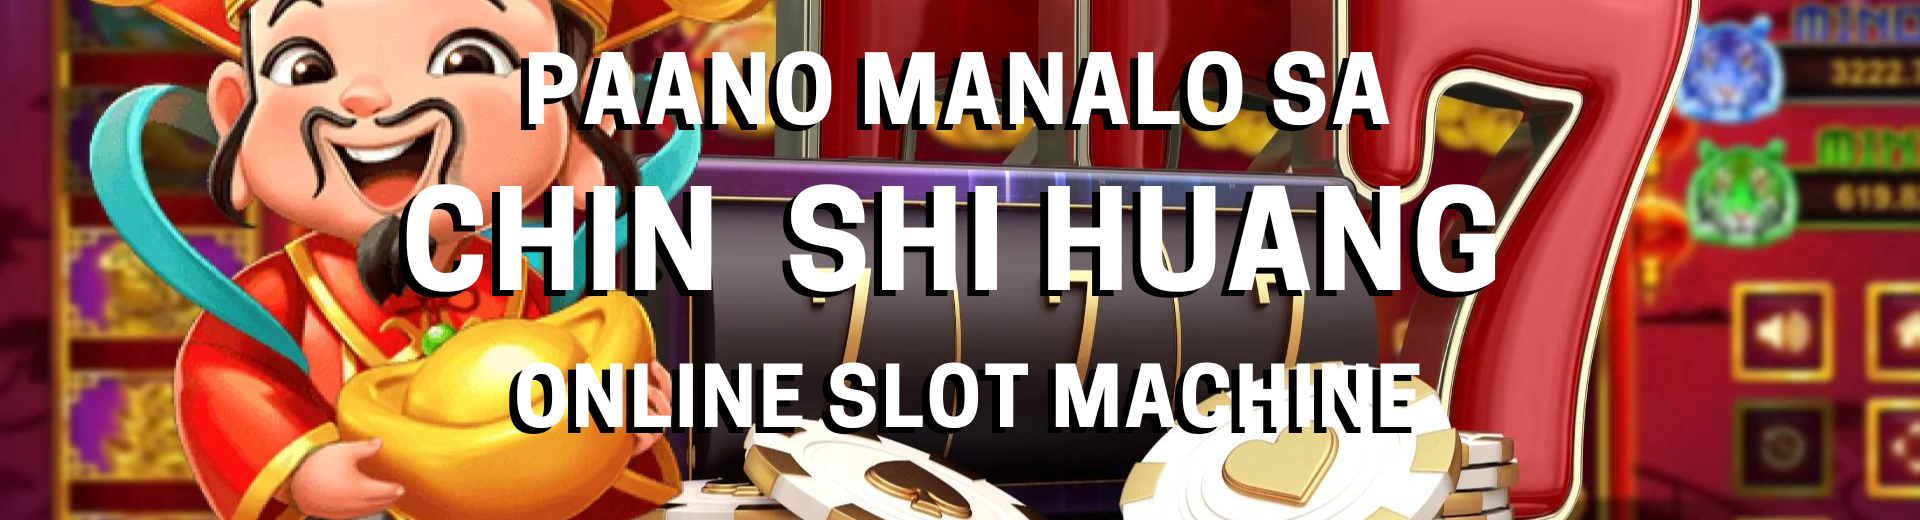 Paano Manalo sa Chin Shi Huang Online Slot Machine